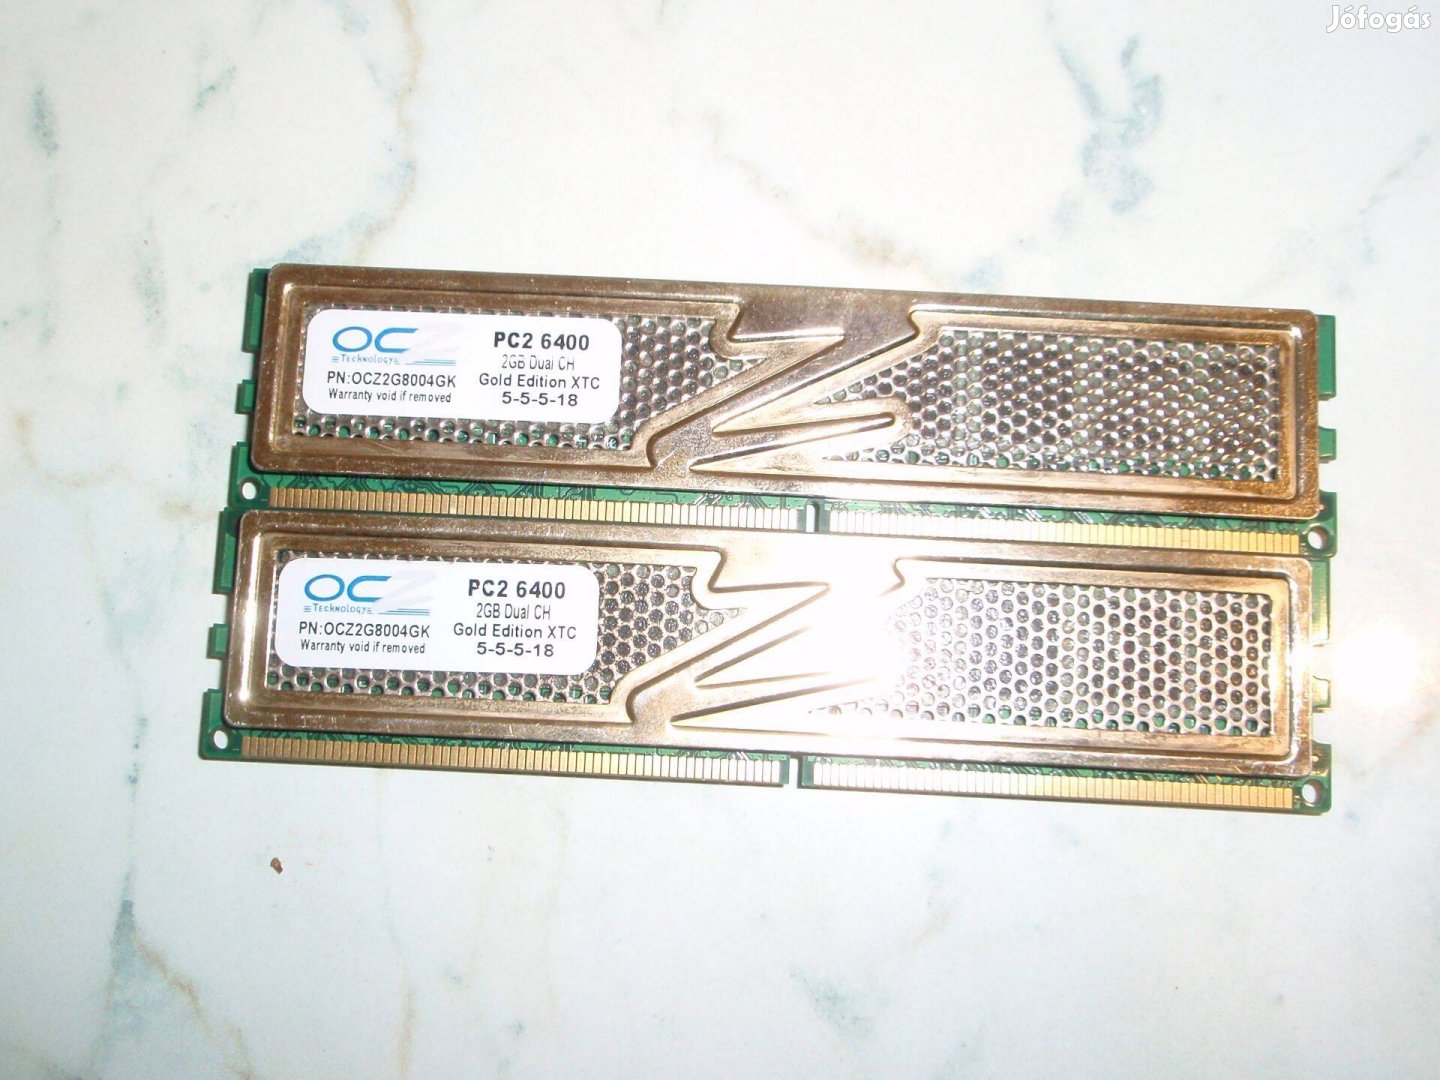 Ocz 4GB (2x2GB) PC2-6400 DDR2-800 Gold Series (Ocz2G8004GK)